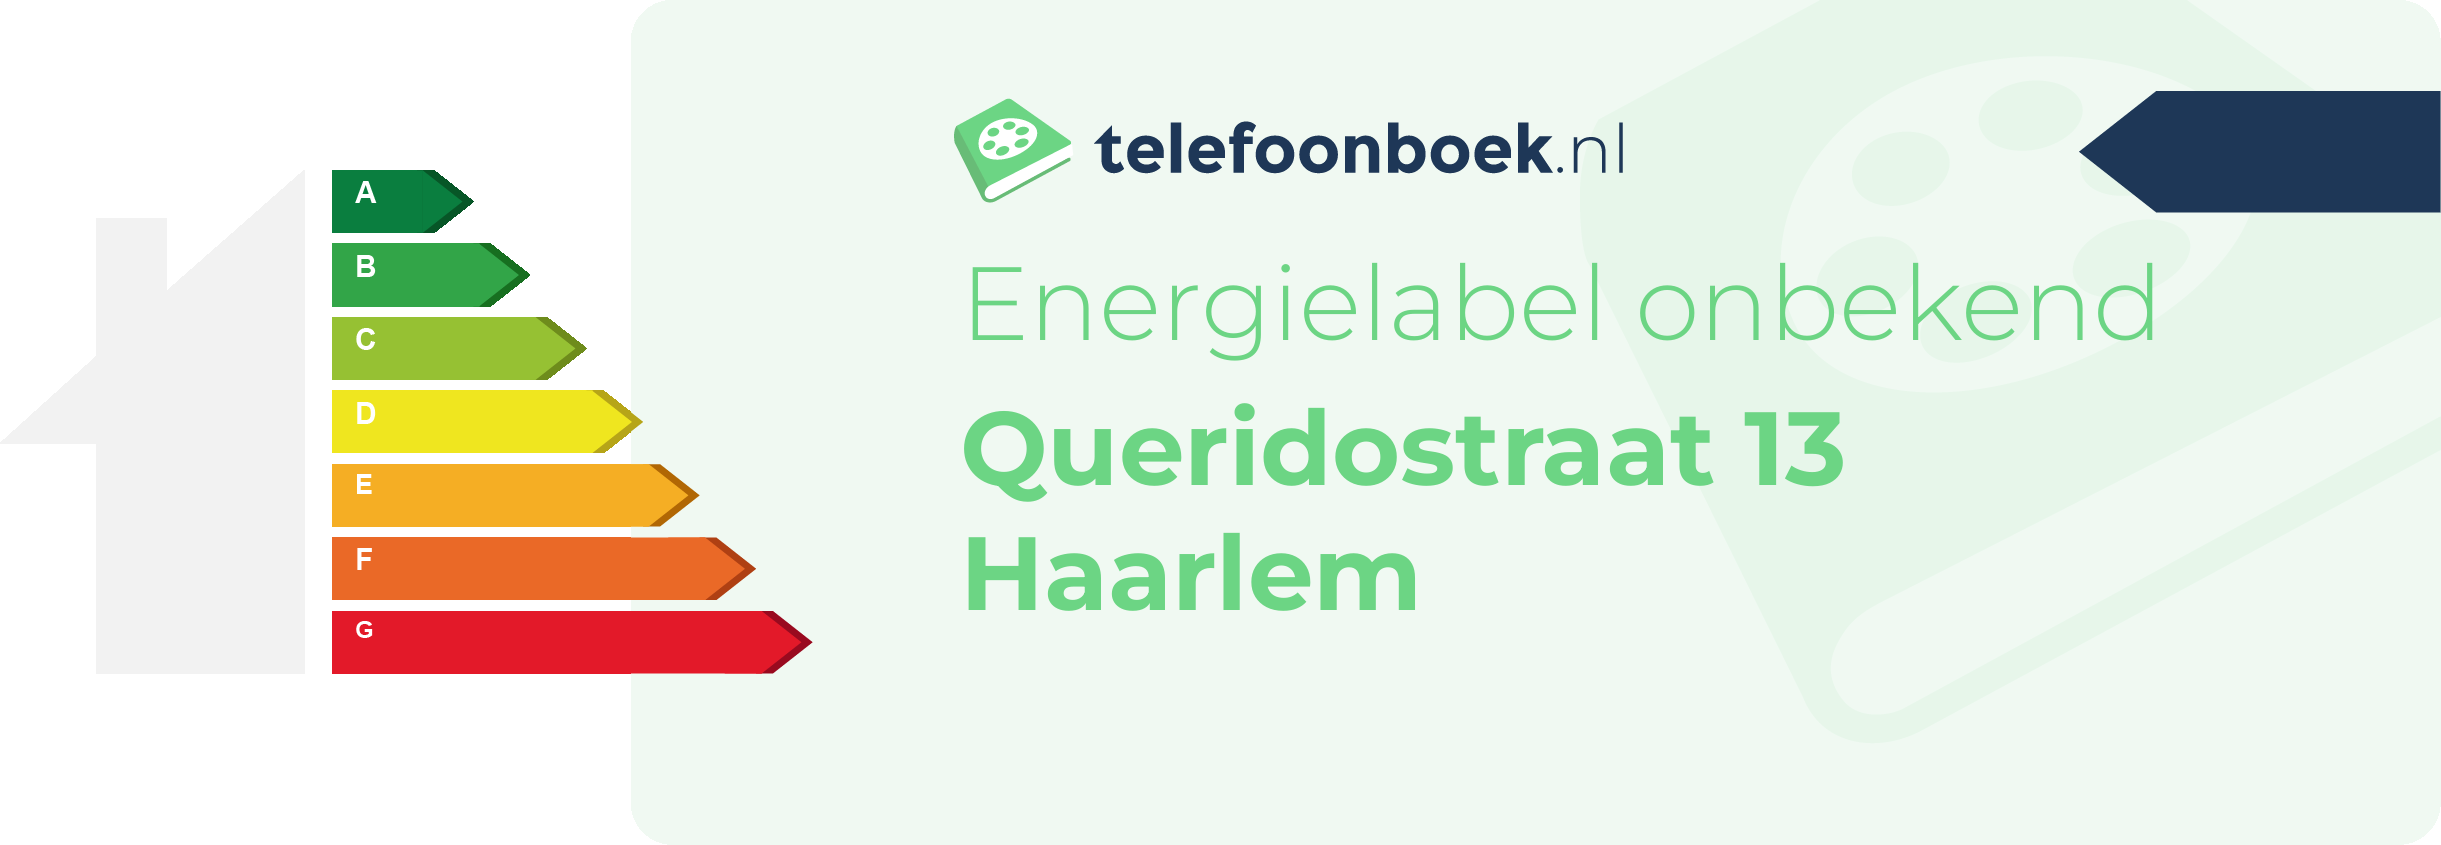 Energielabel Queridostraat 13 Haarlem